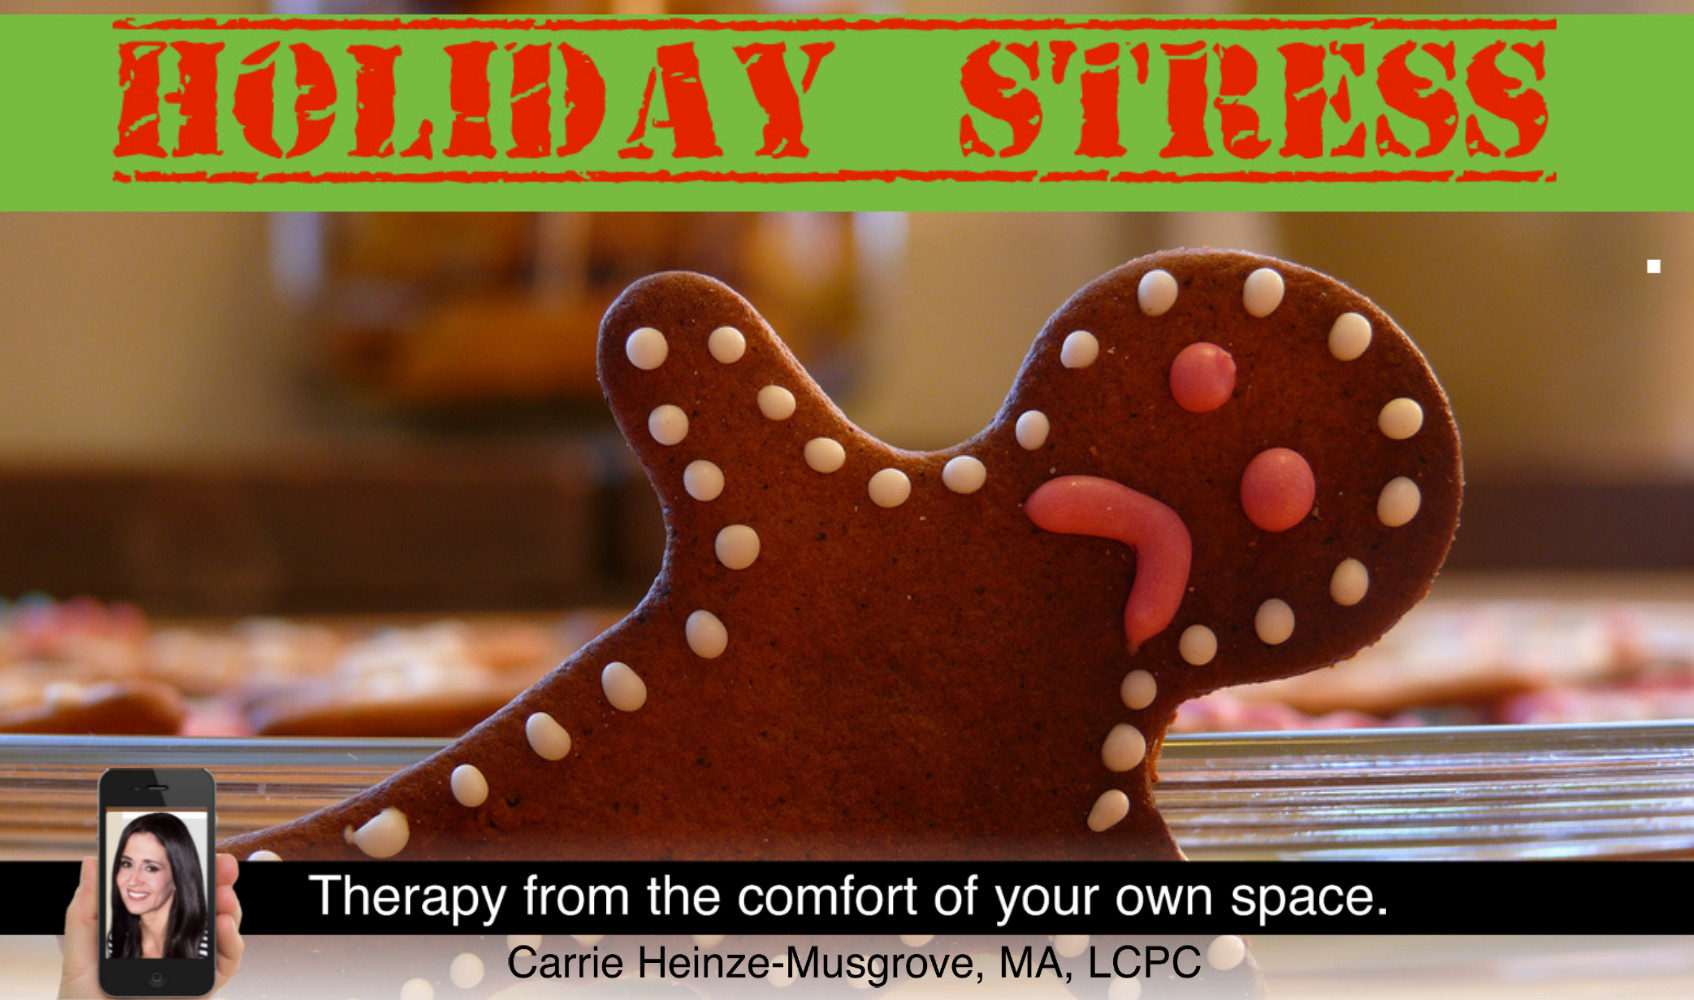 Do you get stressed around the holidays?